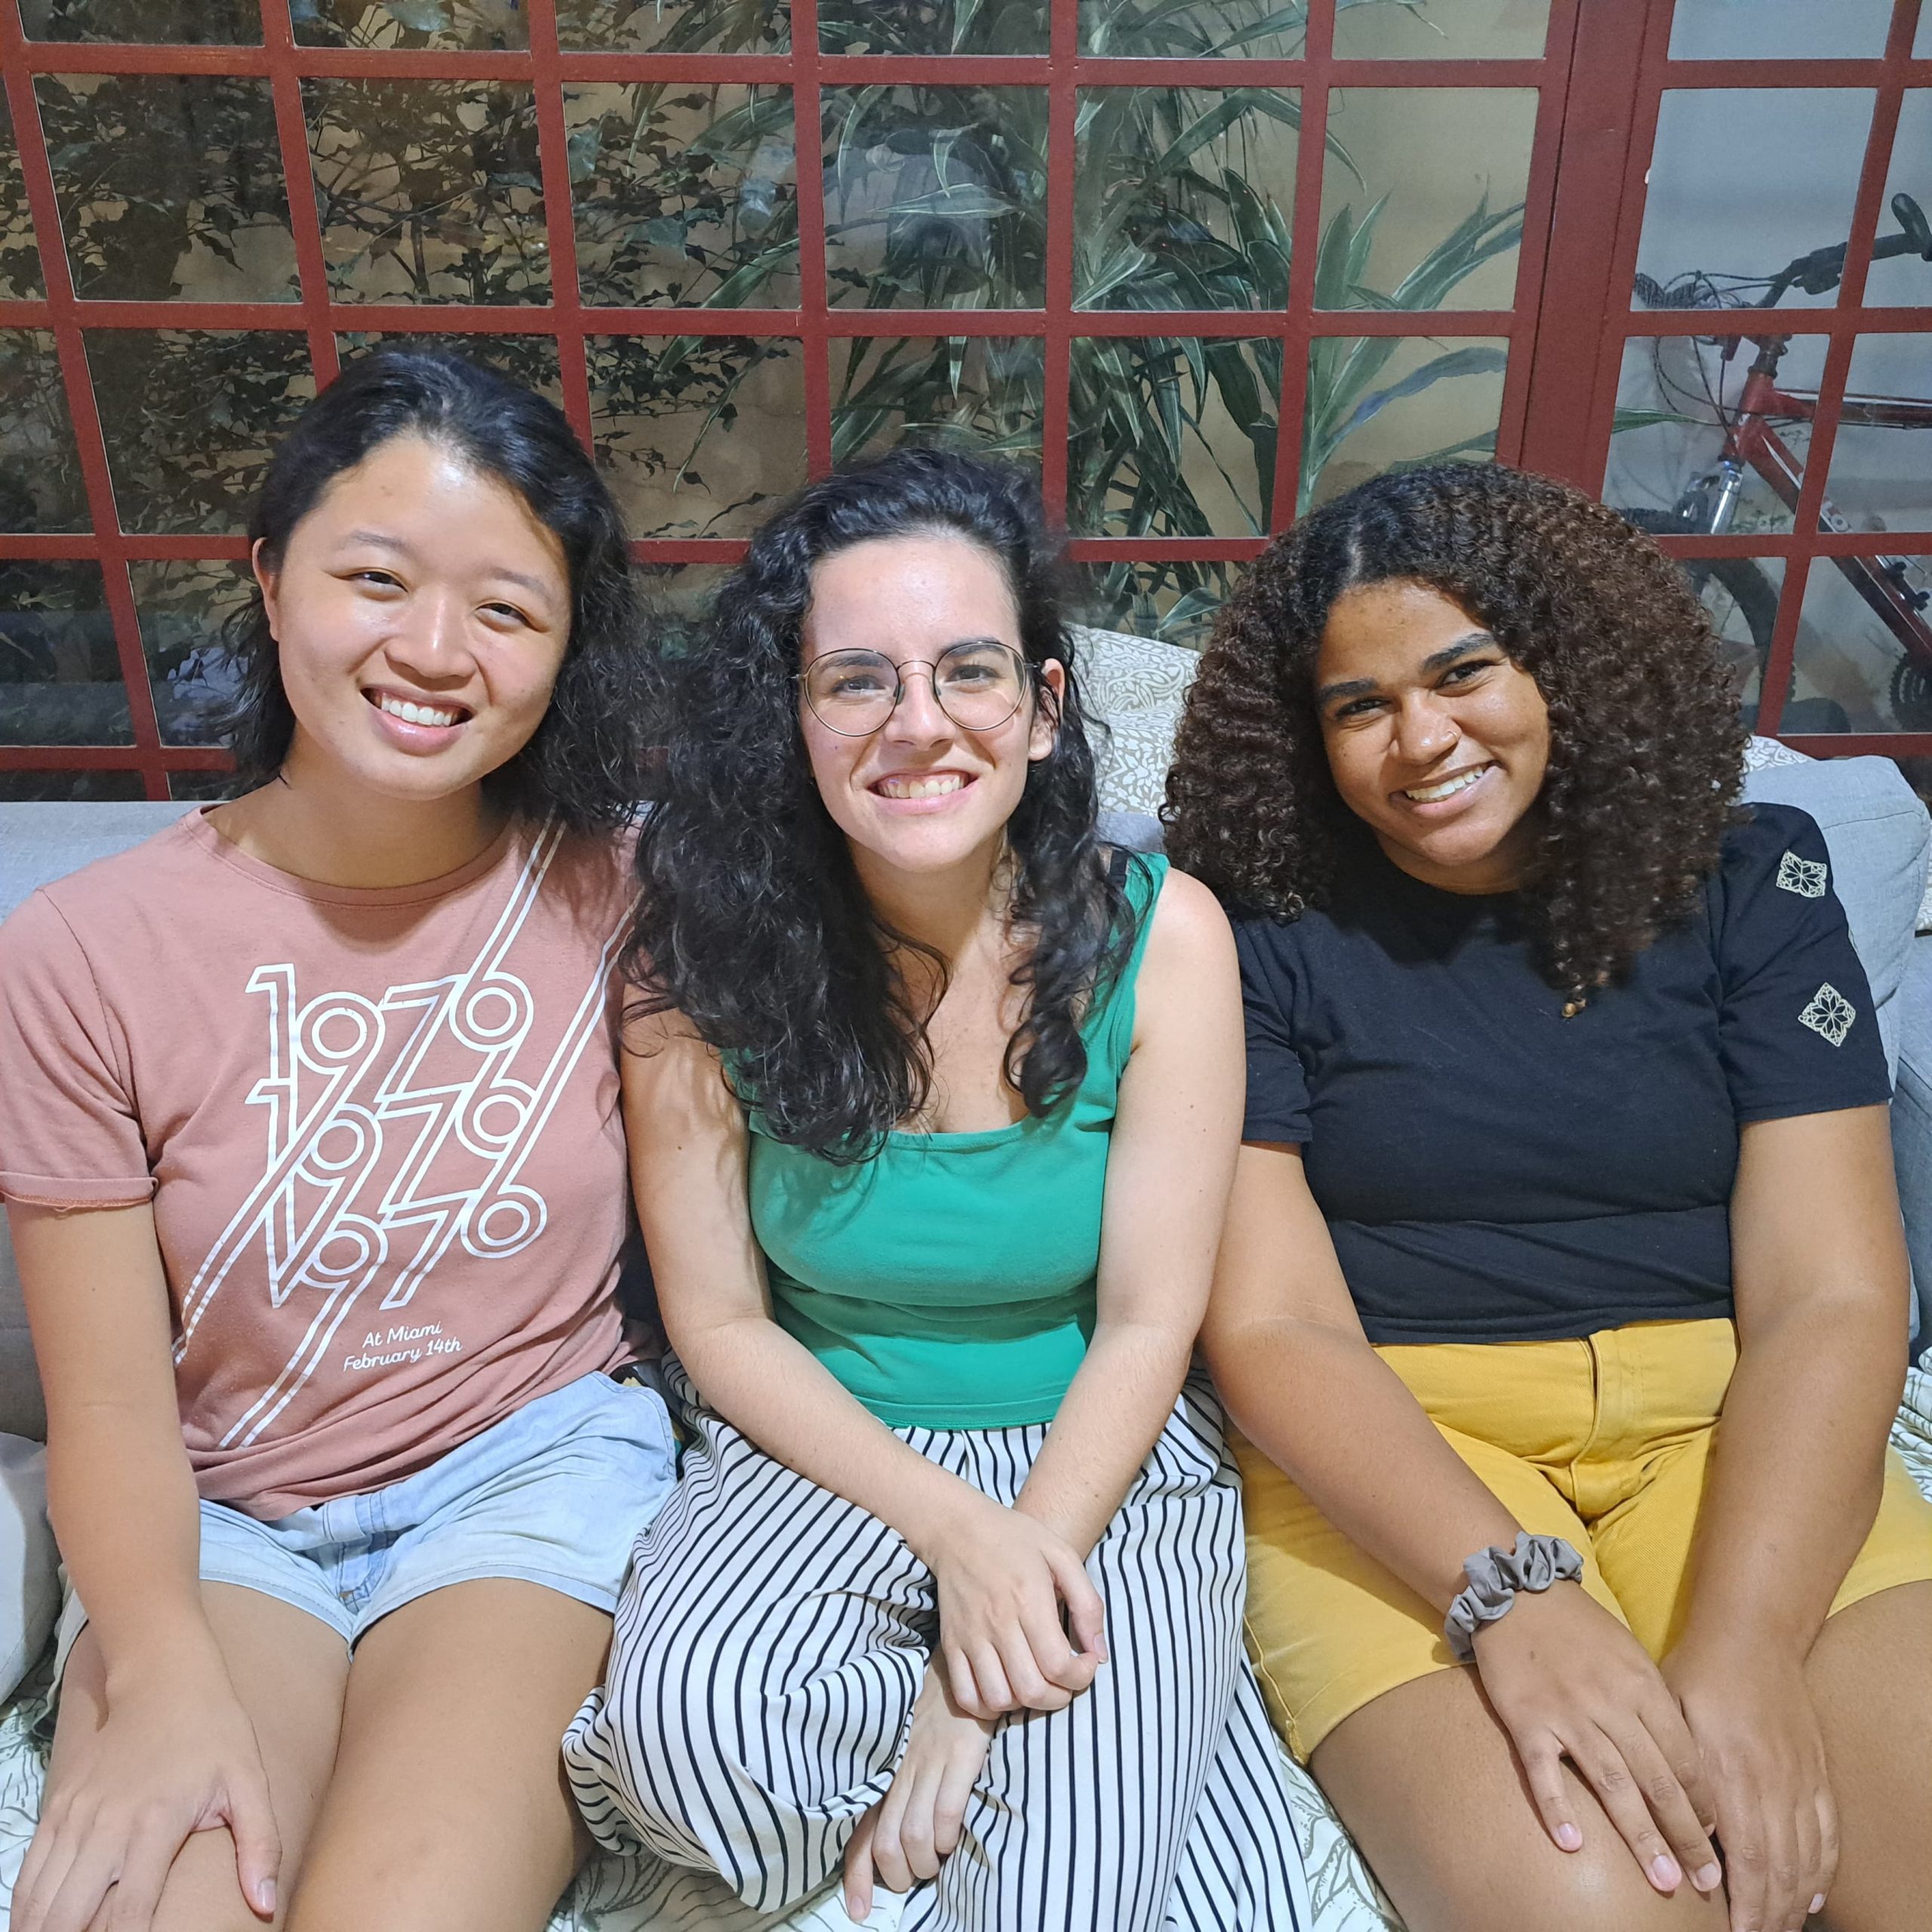 Três meninas sentadas, sorriem para a foto. São as participantes do Siga-me 2023, olhando para a câmera. Elas vestem roupas informais e coloridas. A primeira é asiática, a segunda branca e a terceira negra.